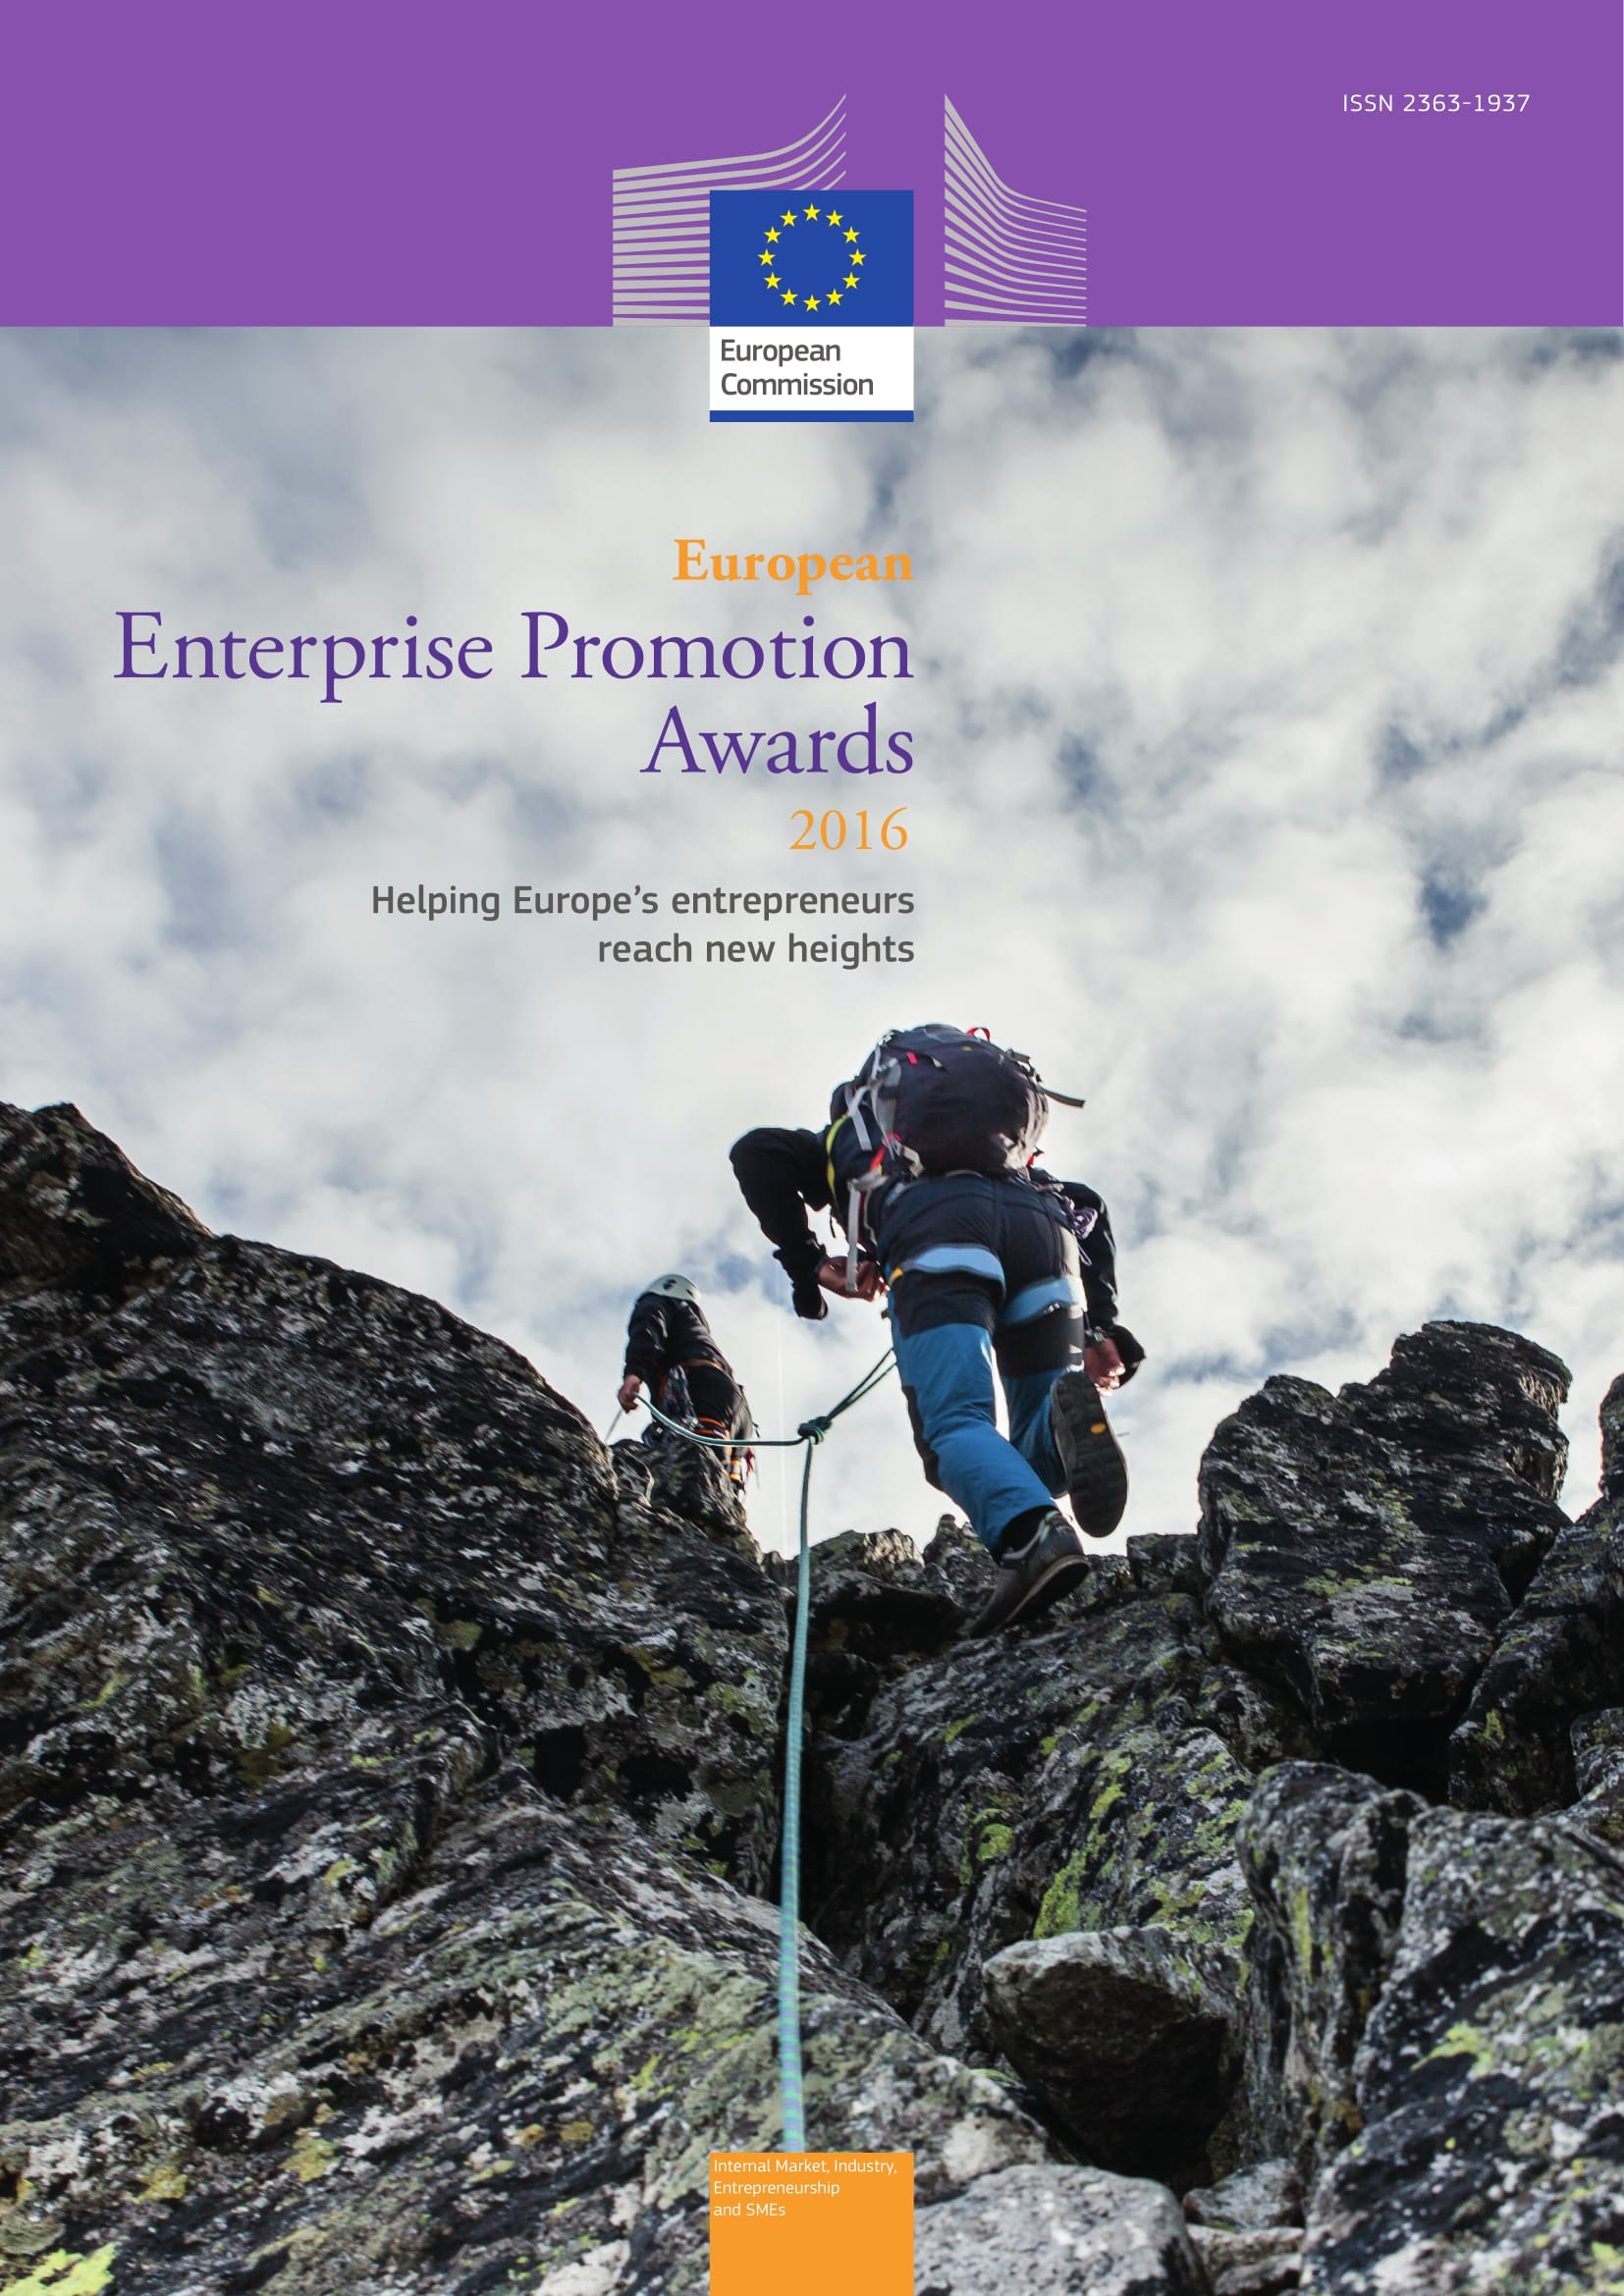 Zdjęcie przedstawiające dwie osoby, które wspinają sie na szczyt góry. Okładka kompendium na temat Europejskiej Nagrody Promocji Przedsiębiorczości 2016i